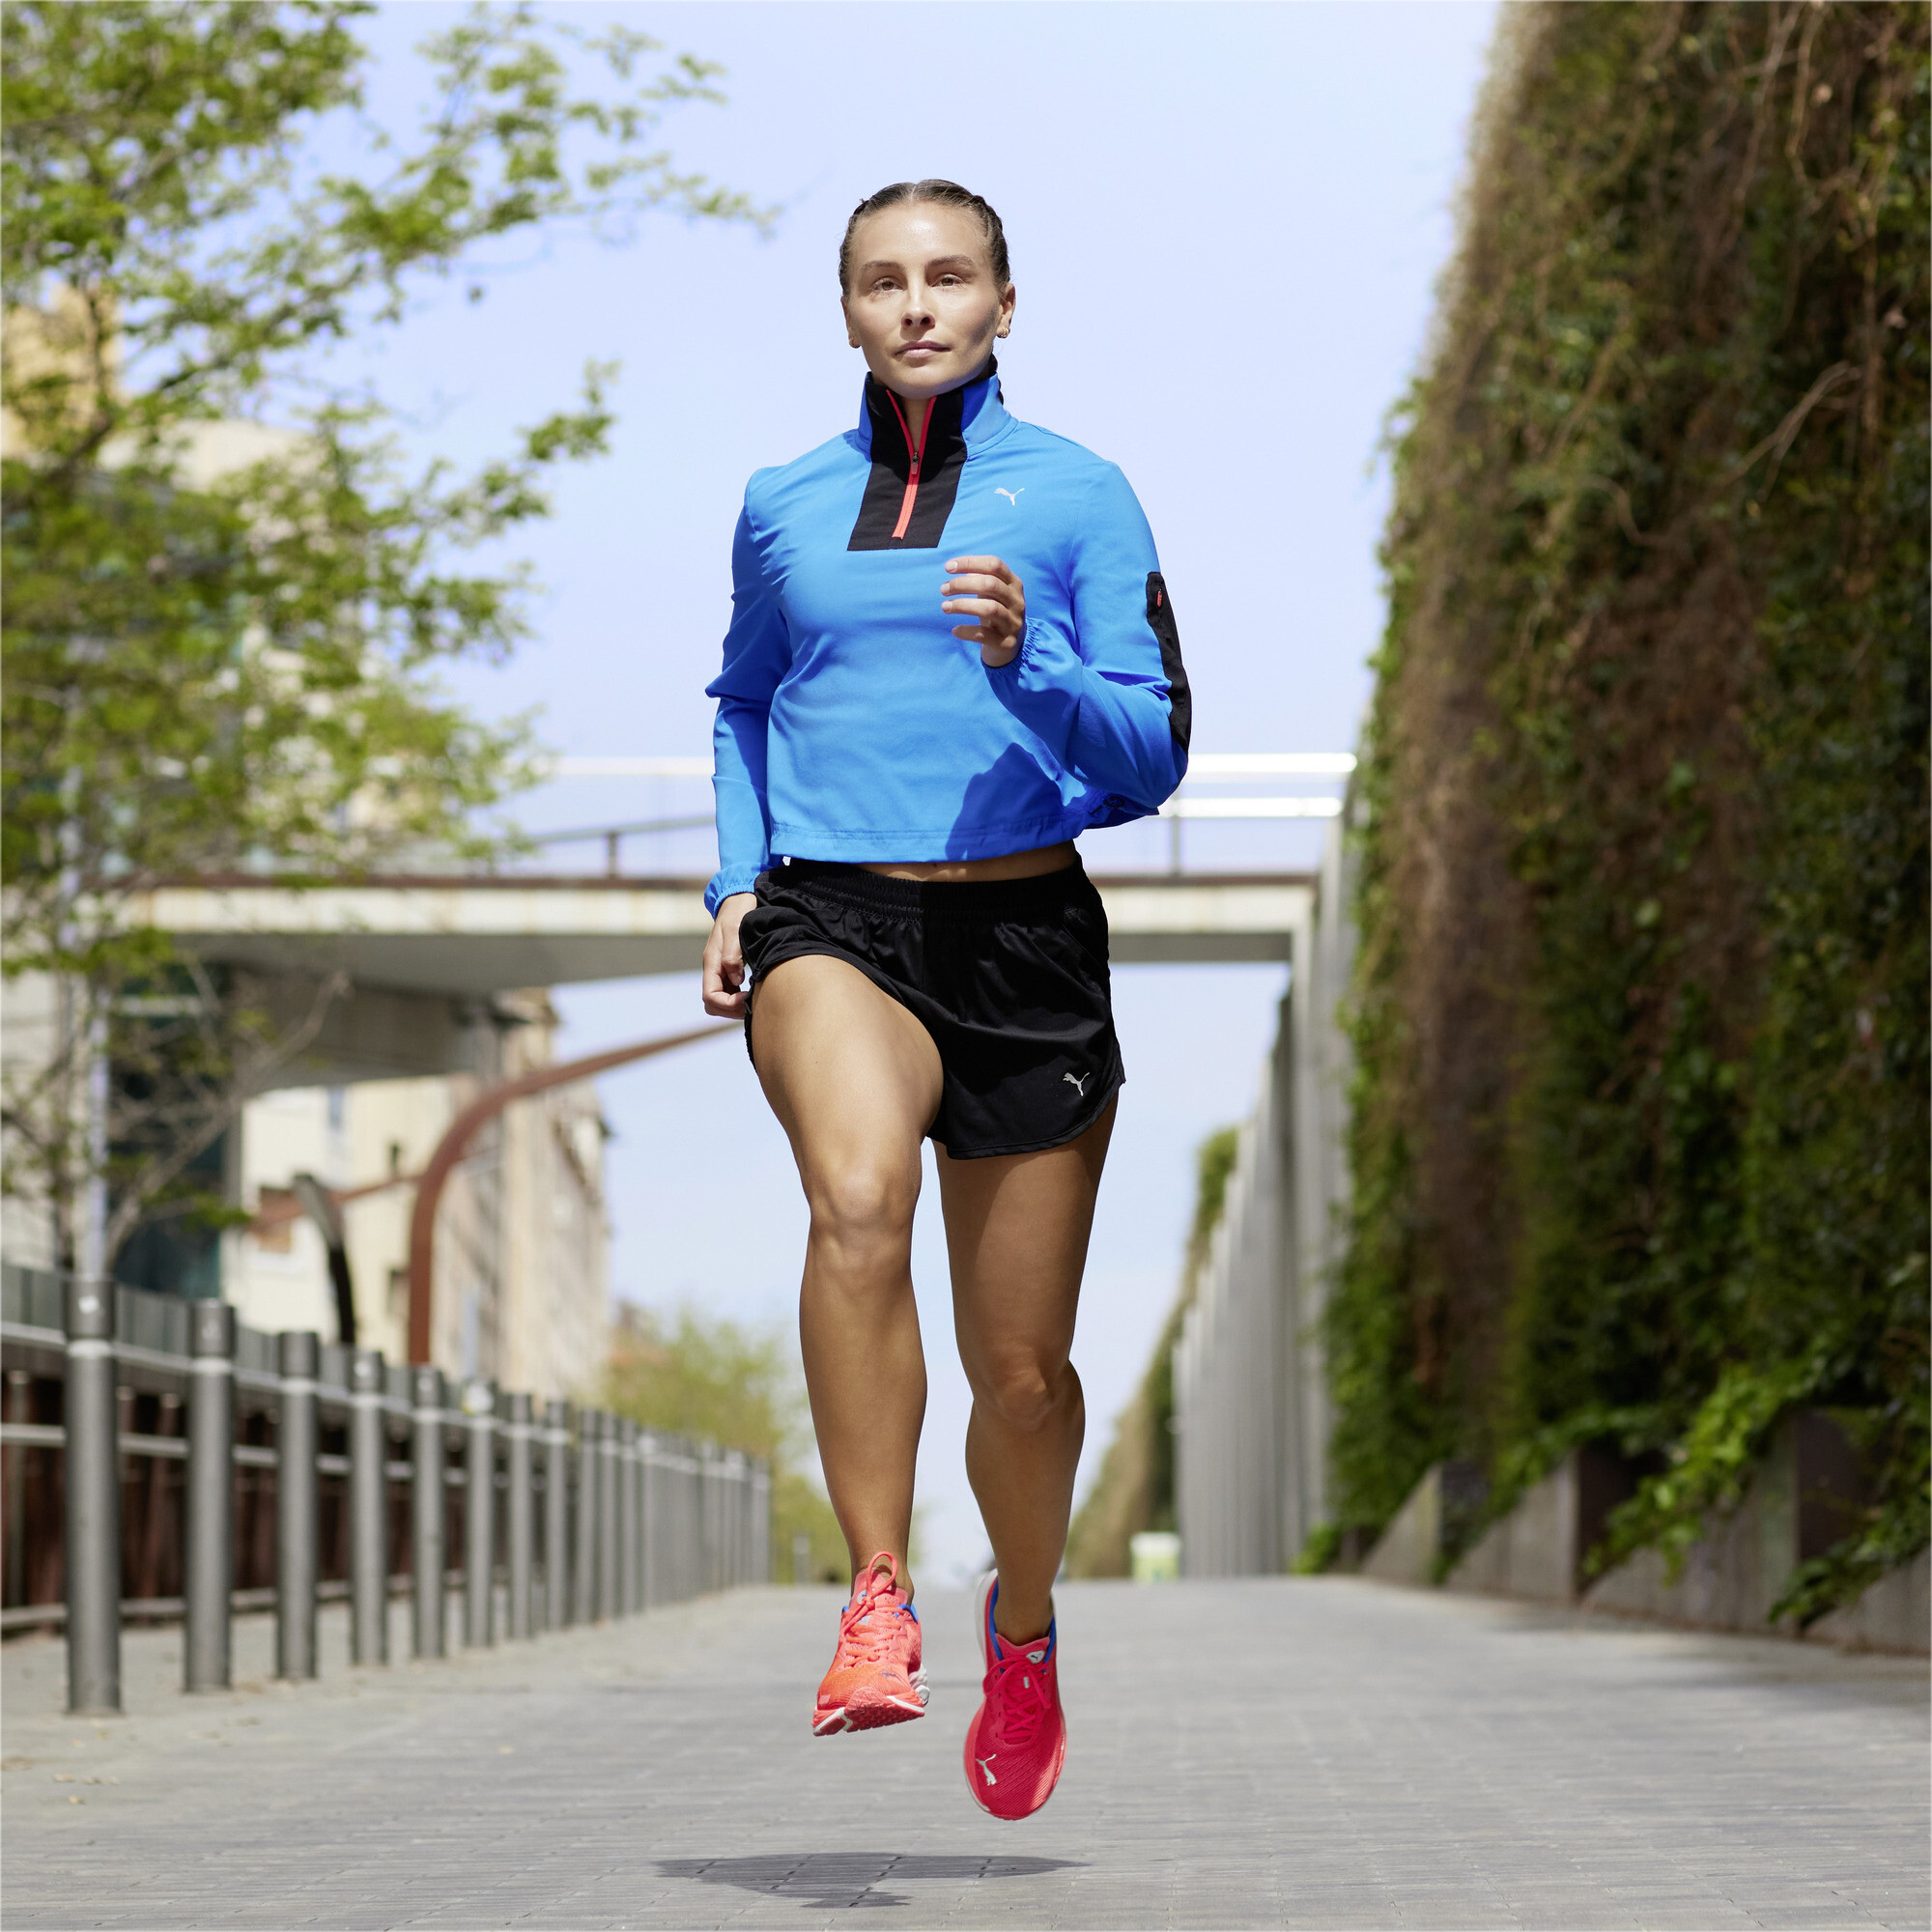 Women's PUMA Deviate NITROâ¢ 2 Running Shoes In Red, Size EU 40